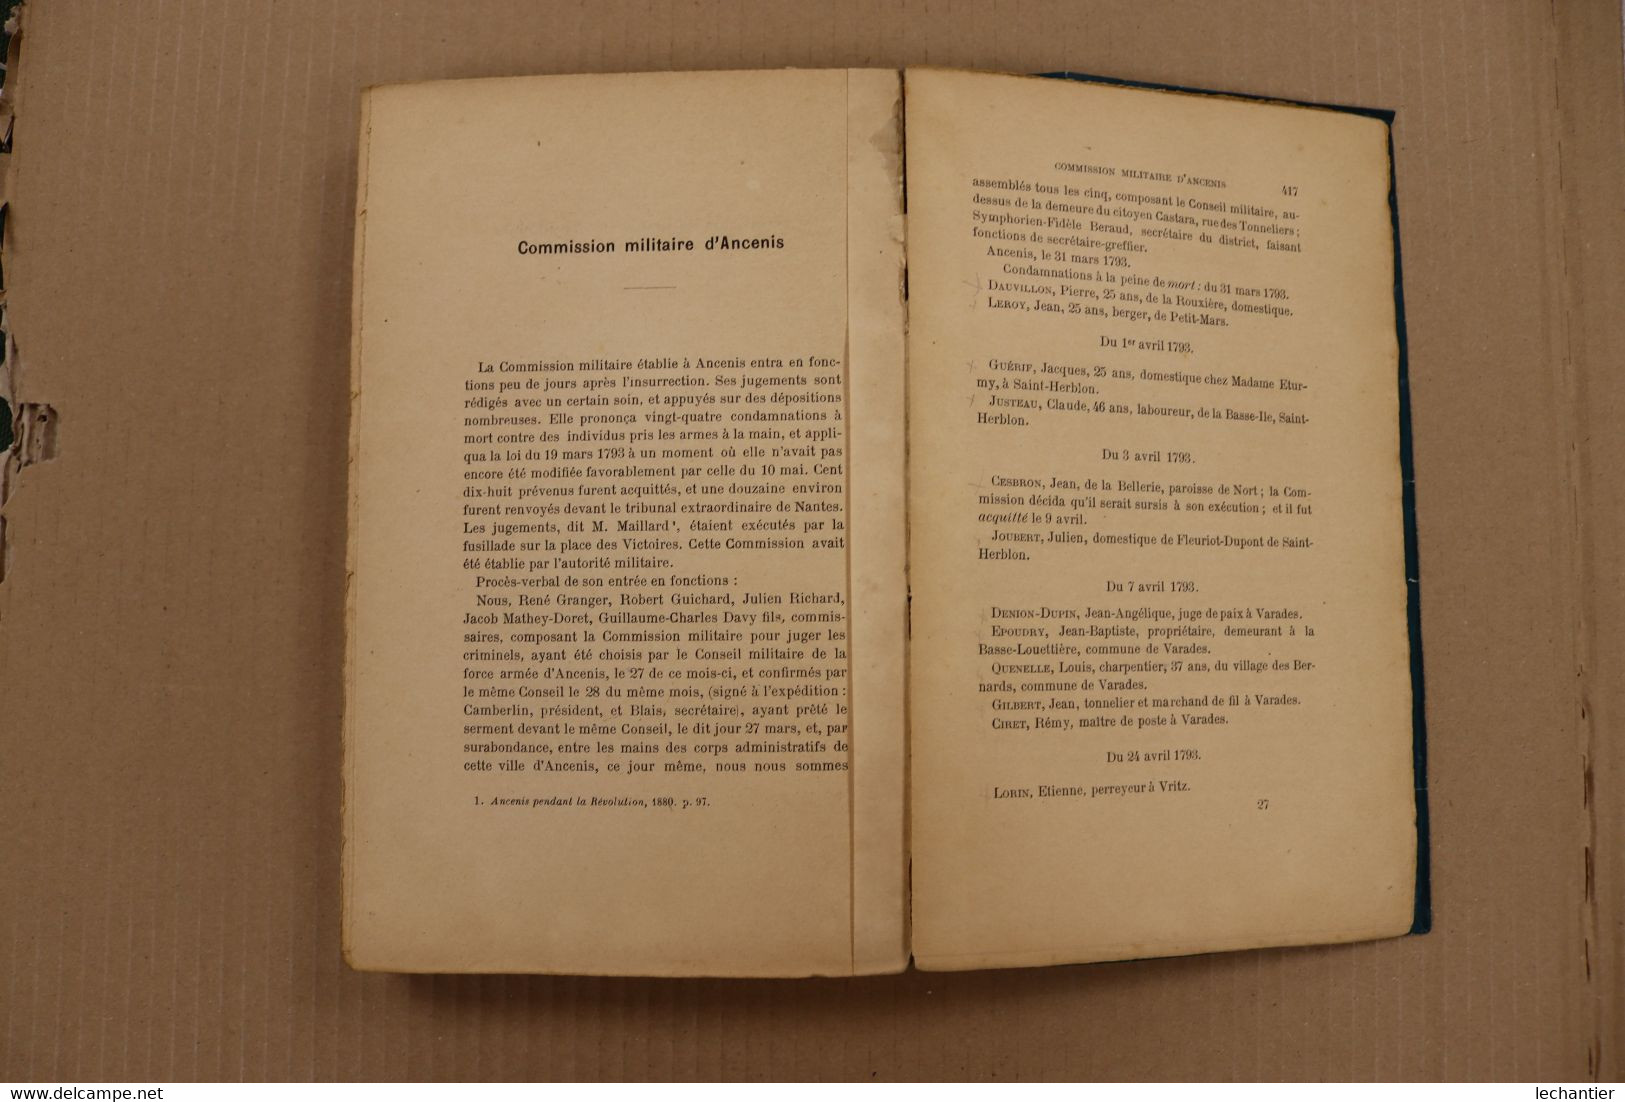 La justice révolutionnaire à NANTES et Loire Inférieure -Alfred Lallié  1896 -  424 pages B.E. - B. CIER libraire Nantes